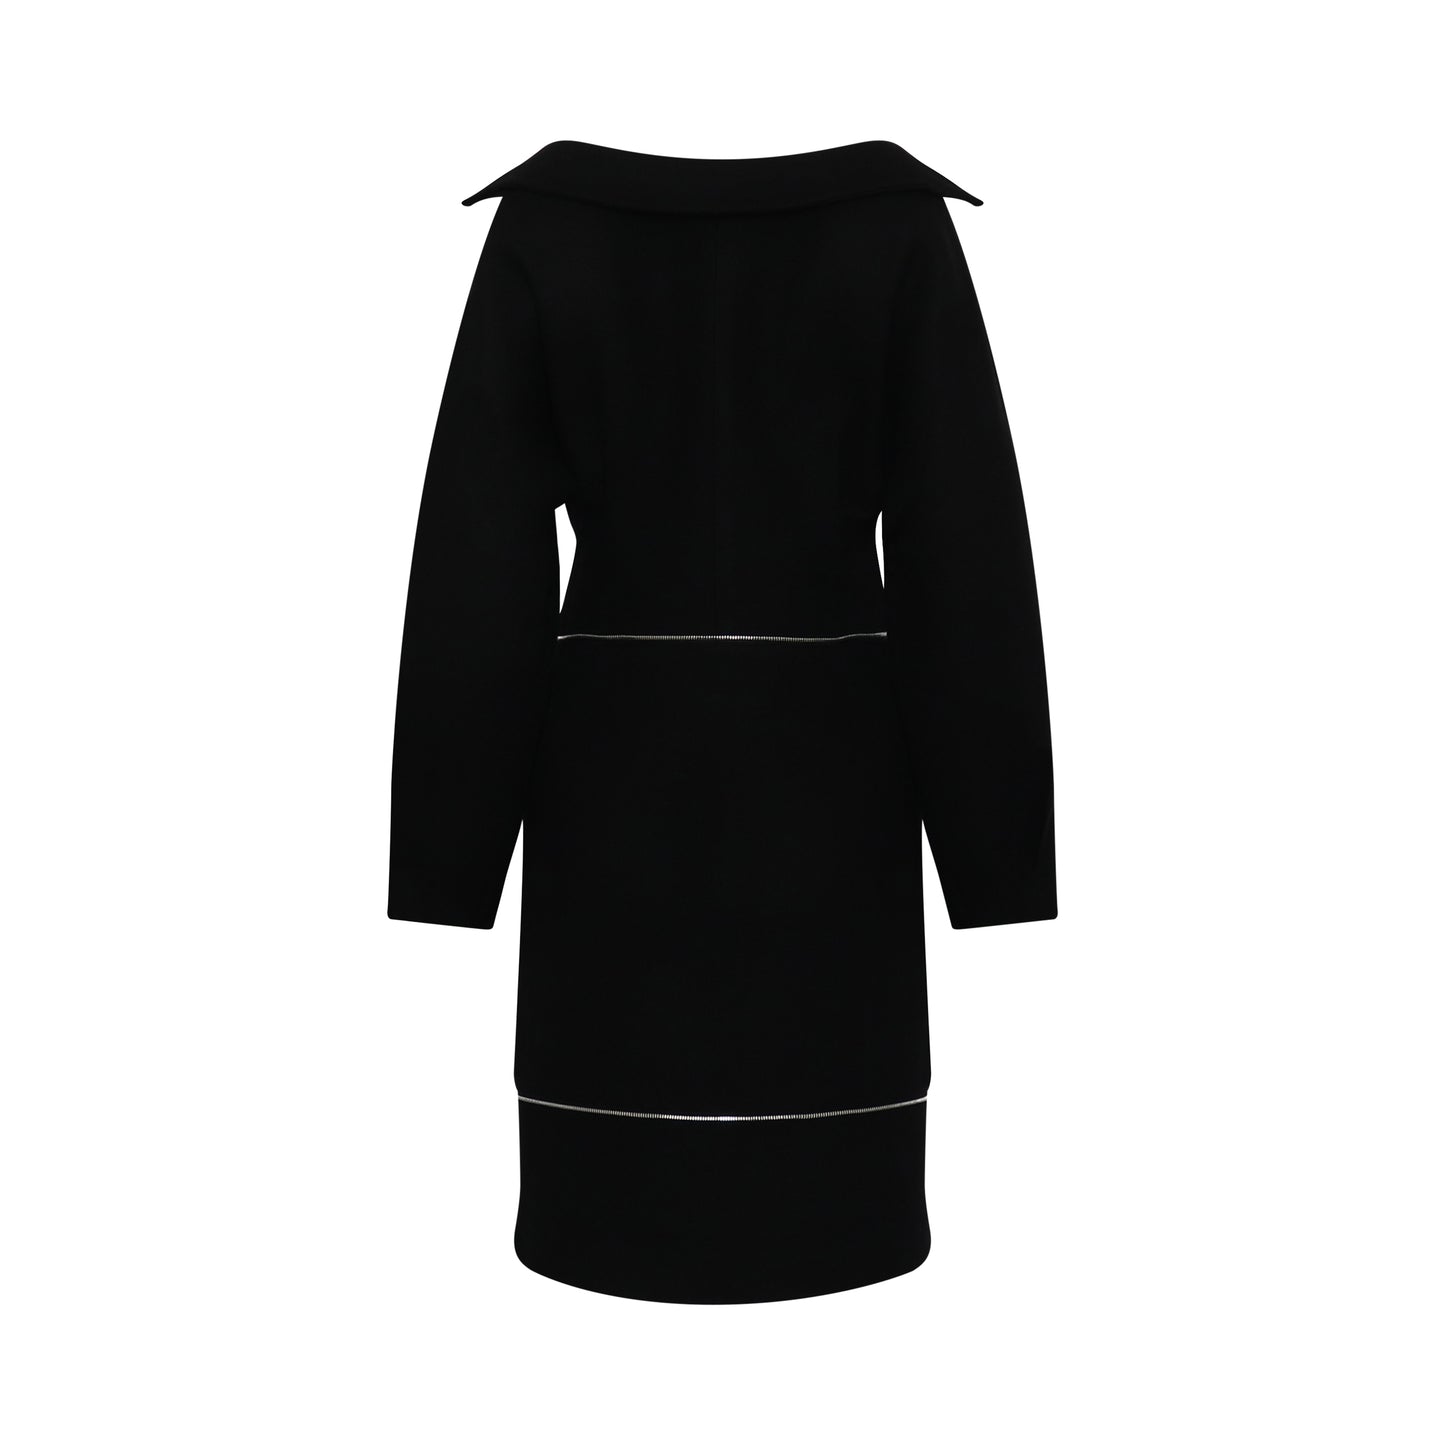 Off-Shoulder Neck Line Dress in Black